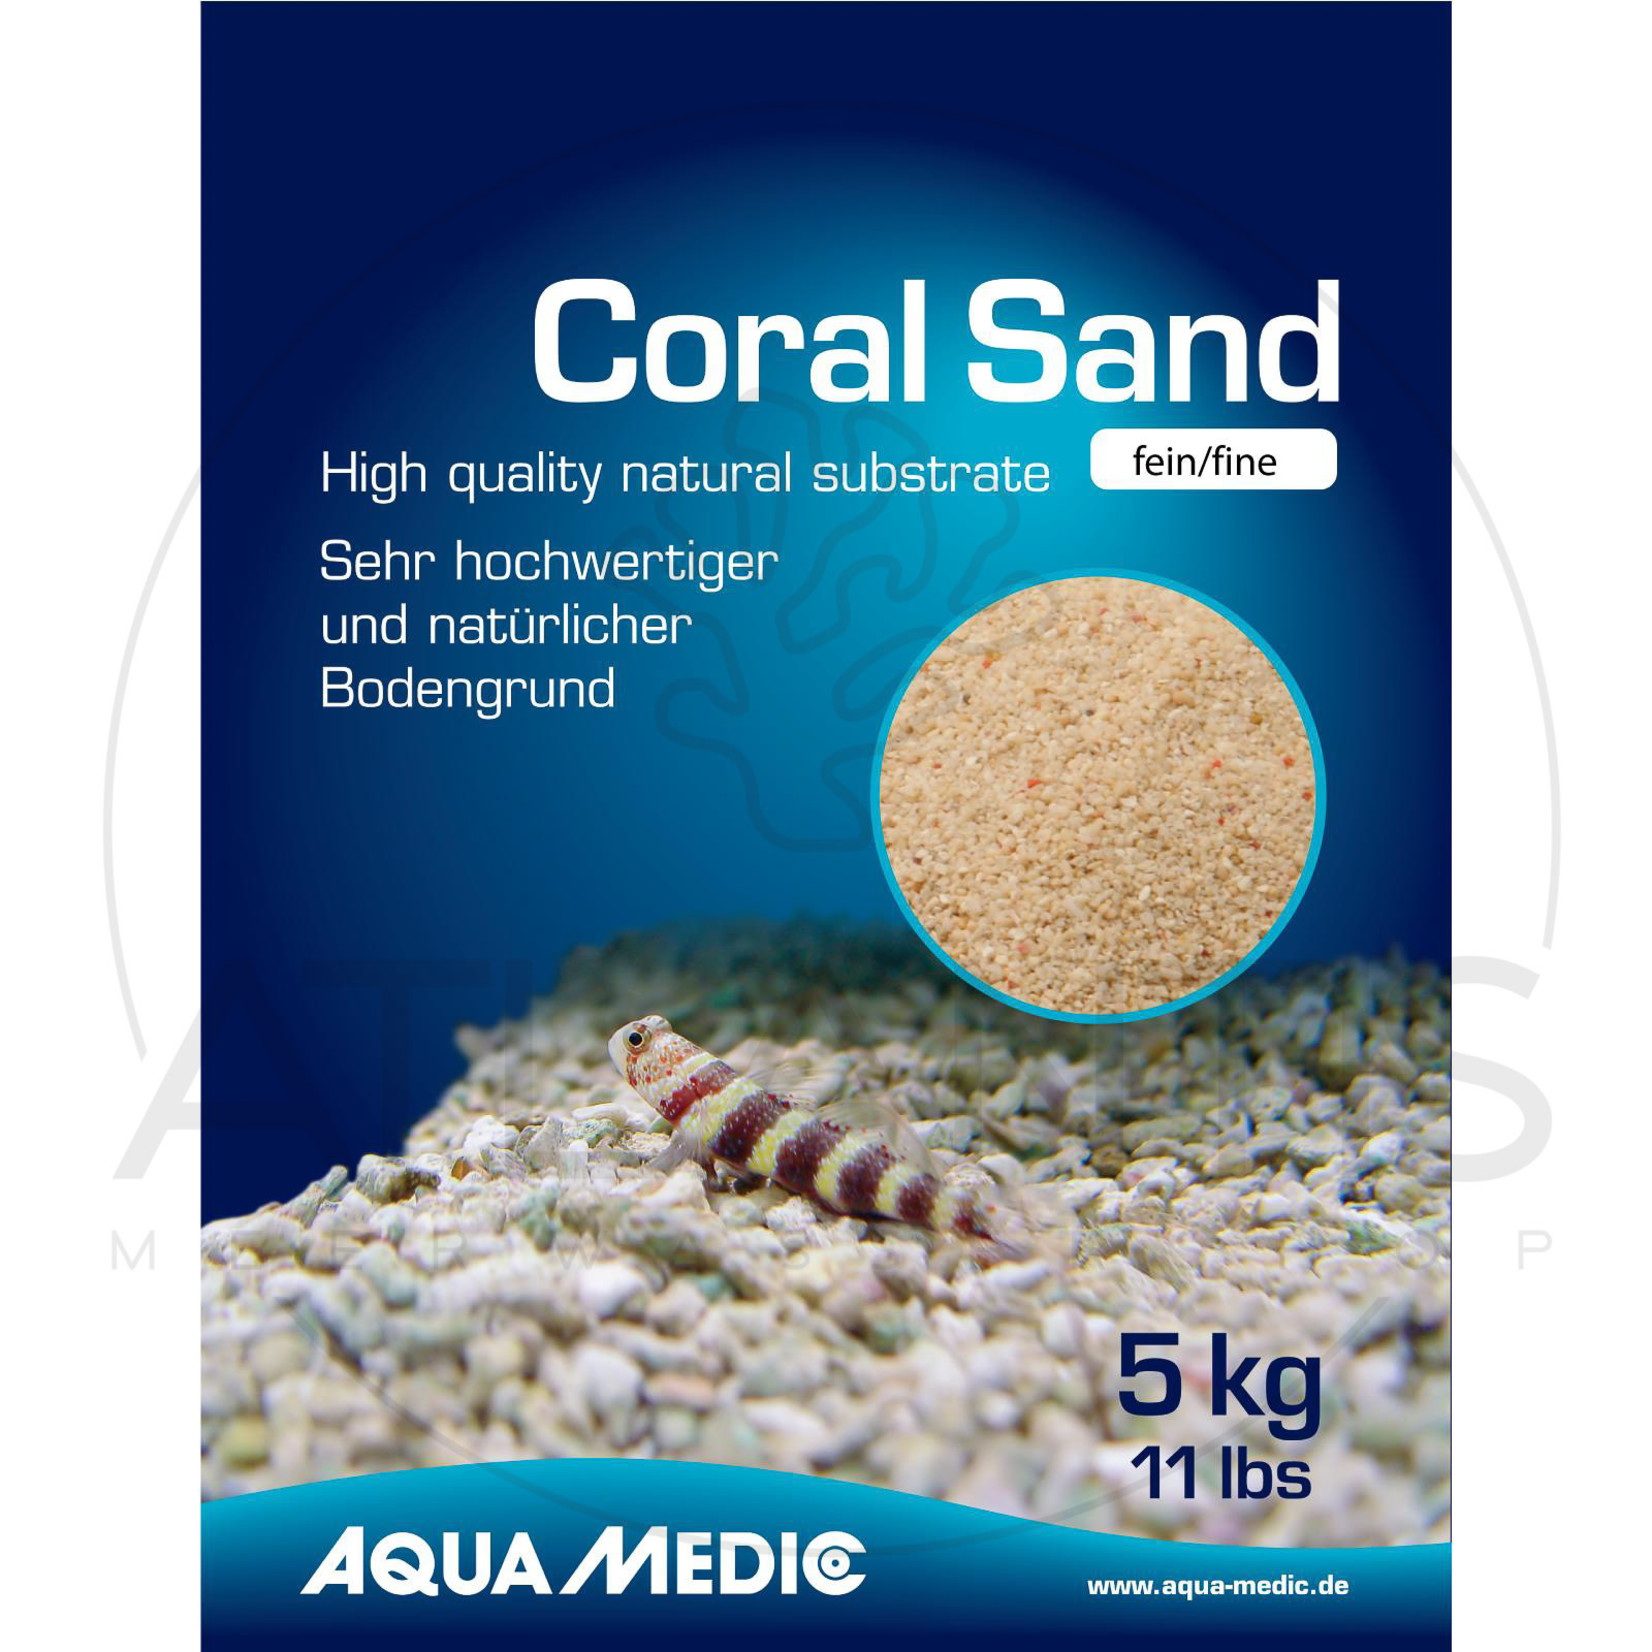 Aqua Medic Coral Sand fine - 10 kg bag